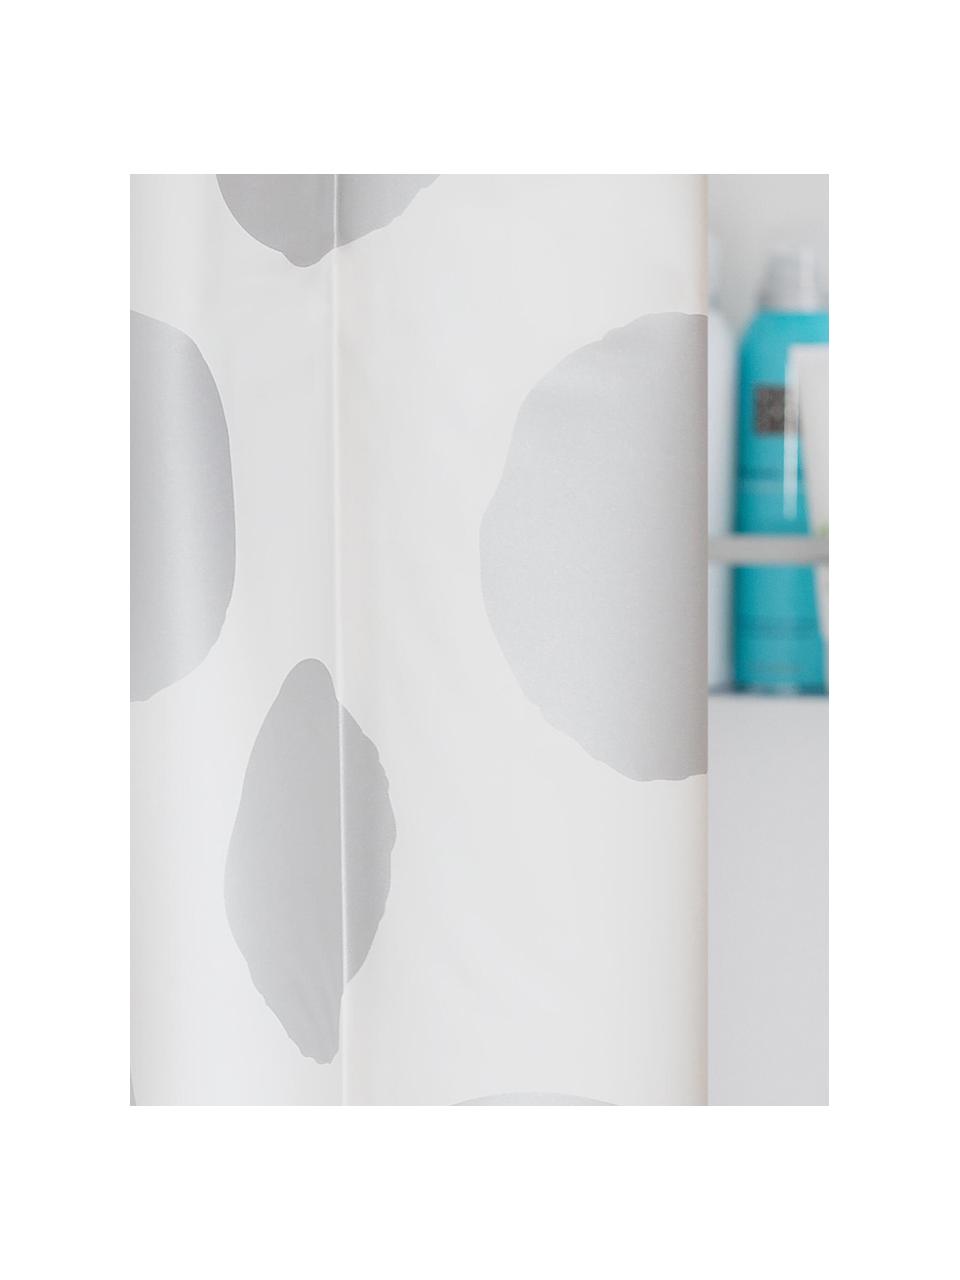 Duschvorhang Spots in Weiß/Silber, Kunststoff (PEVA), wasserdicht, Weiß, Silberfarben, B 180 x L 200 cm